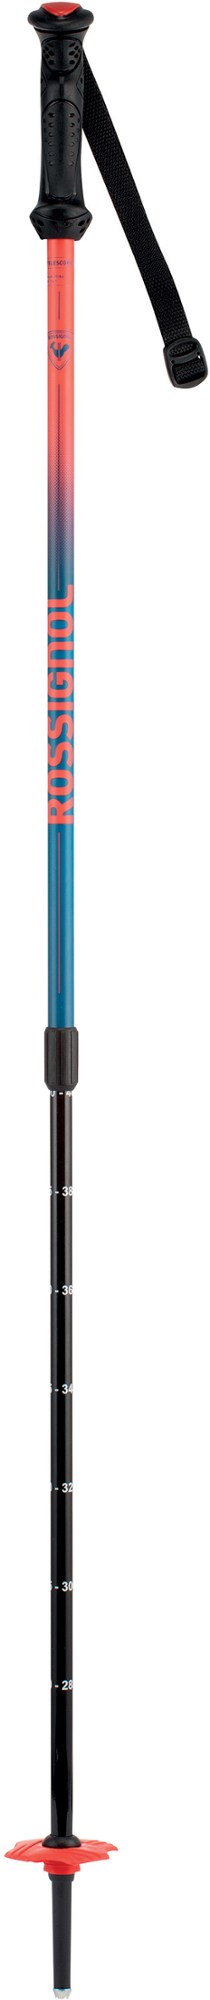 Телескопические лыжные палки Jr. — детские Rossignol палки лыжные стеклопластиковые длина 165 см